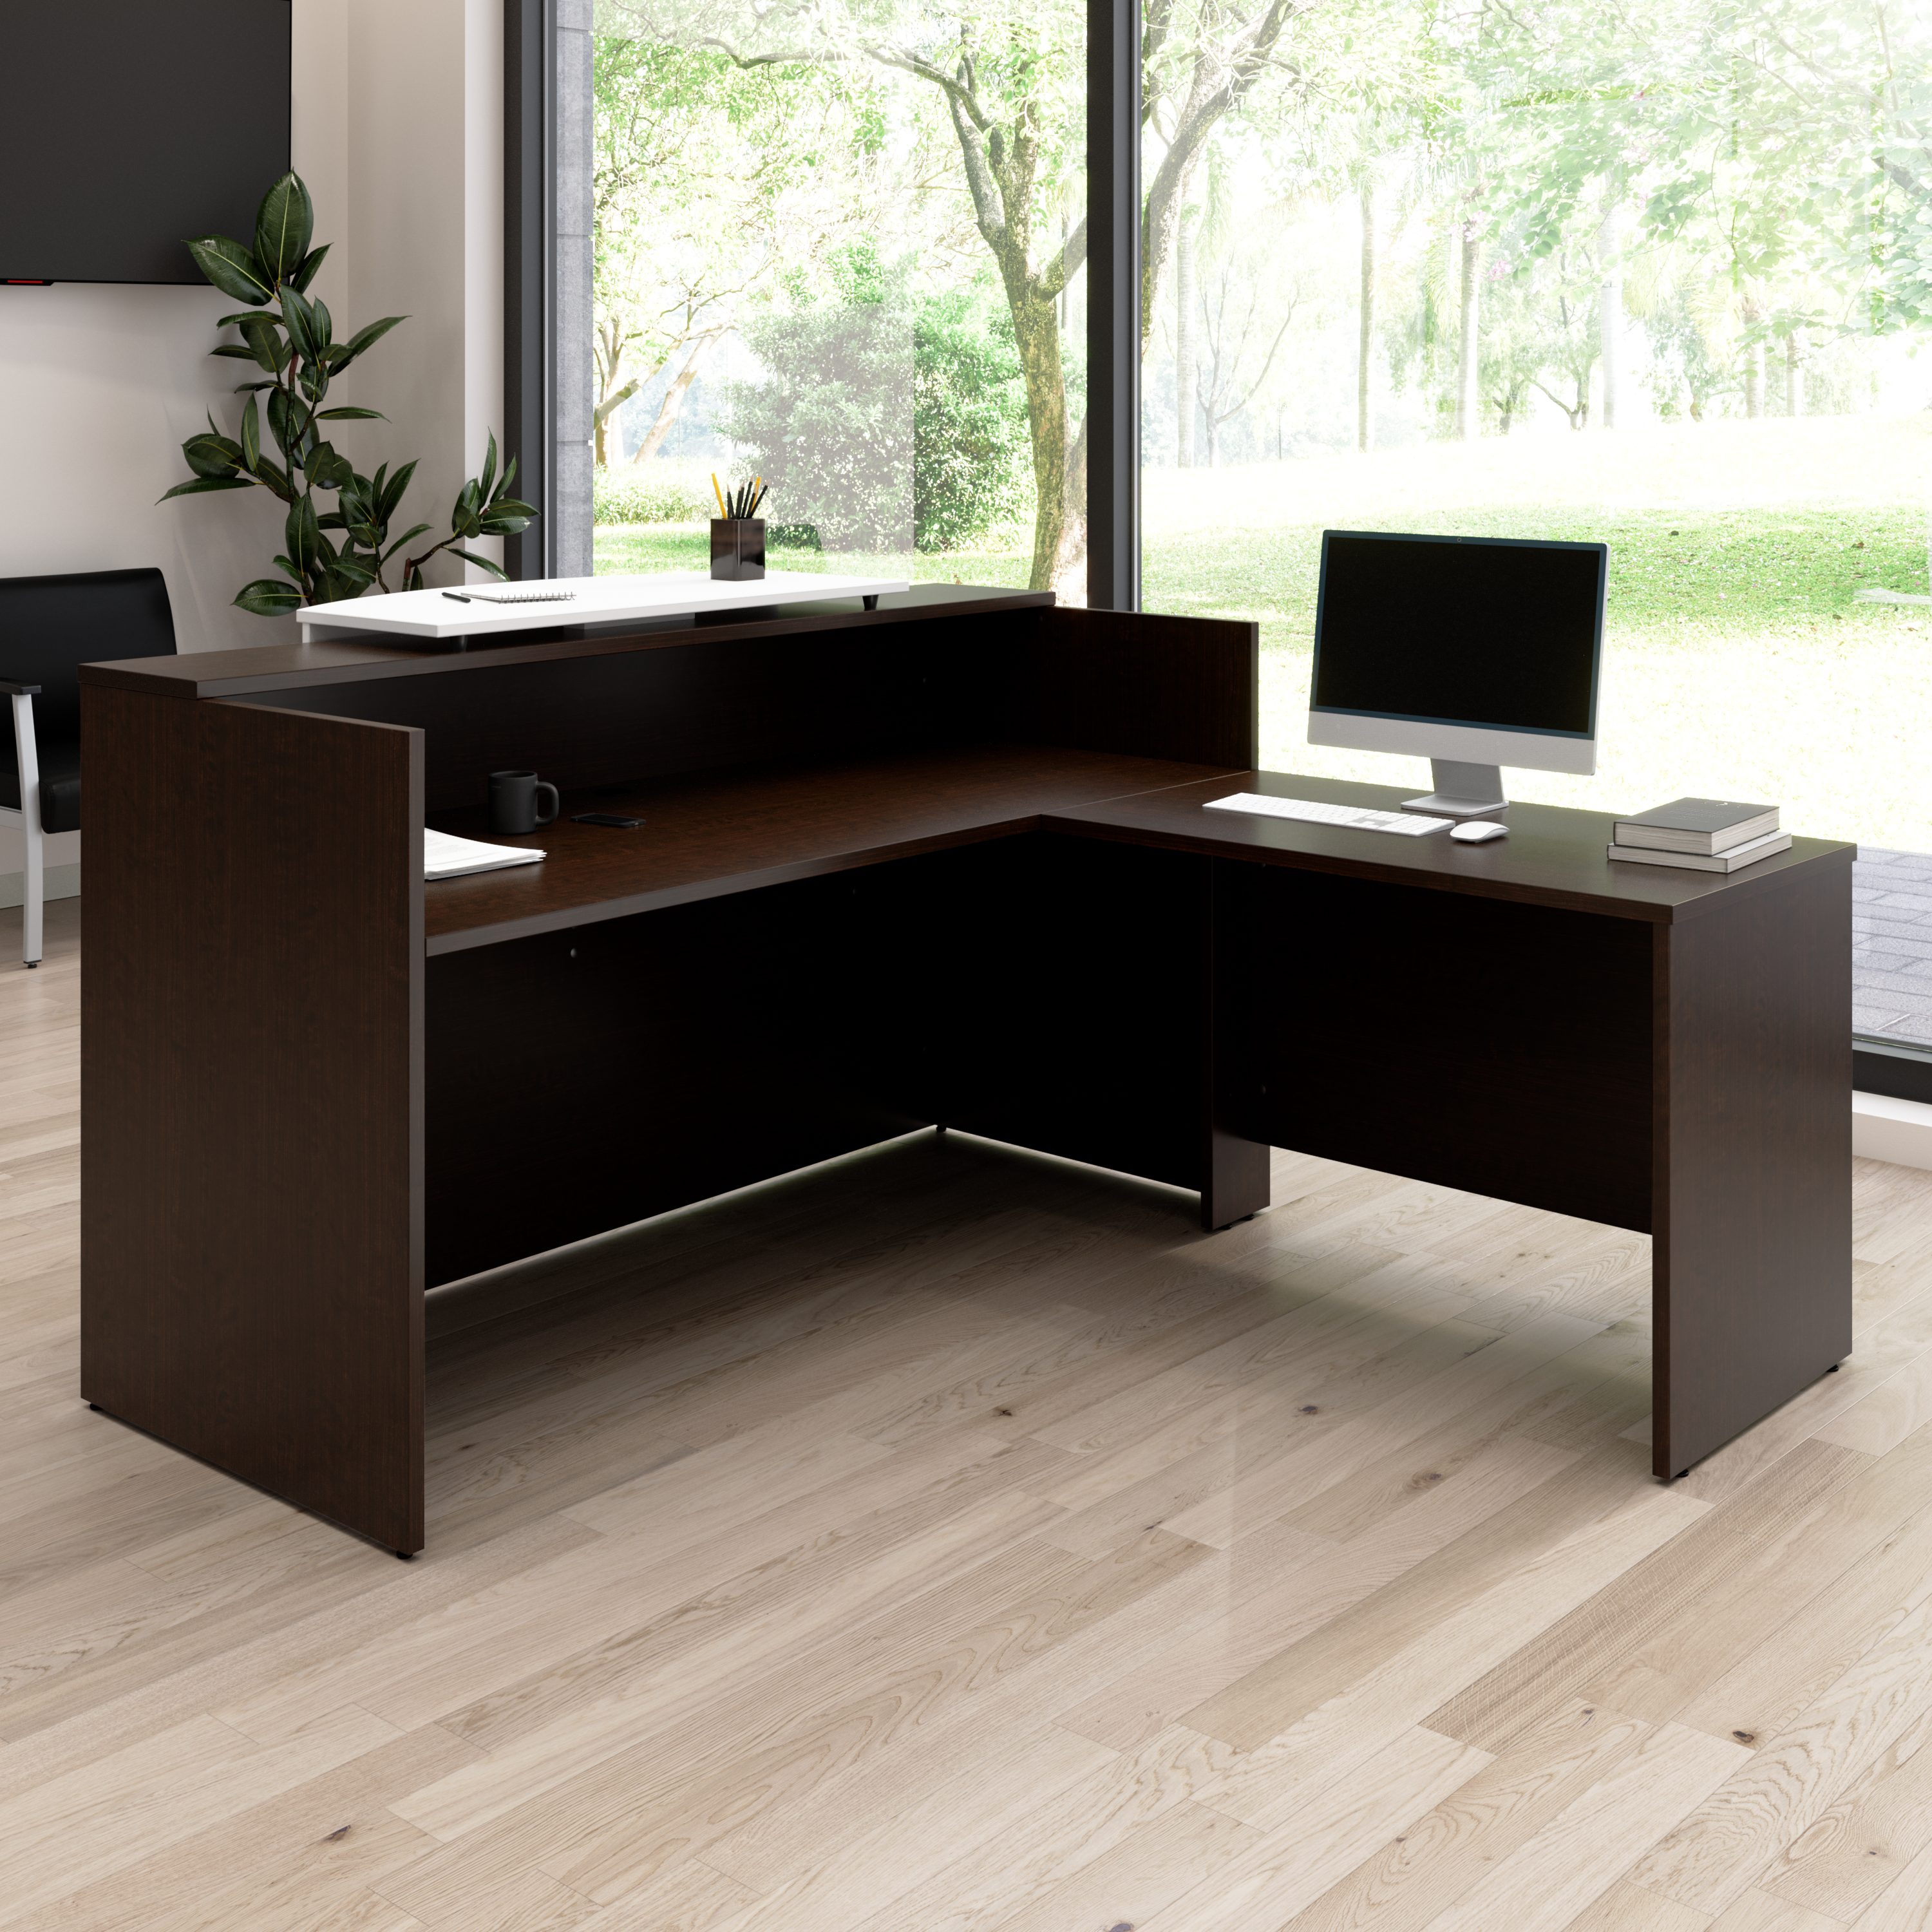 Shop Bush Business Furniture Arrive 72W x 72D L Shaped Reception Desk with Counter 01 ARV009MR #color_mocha cherry